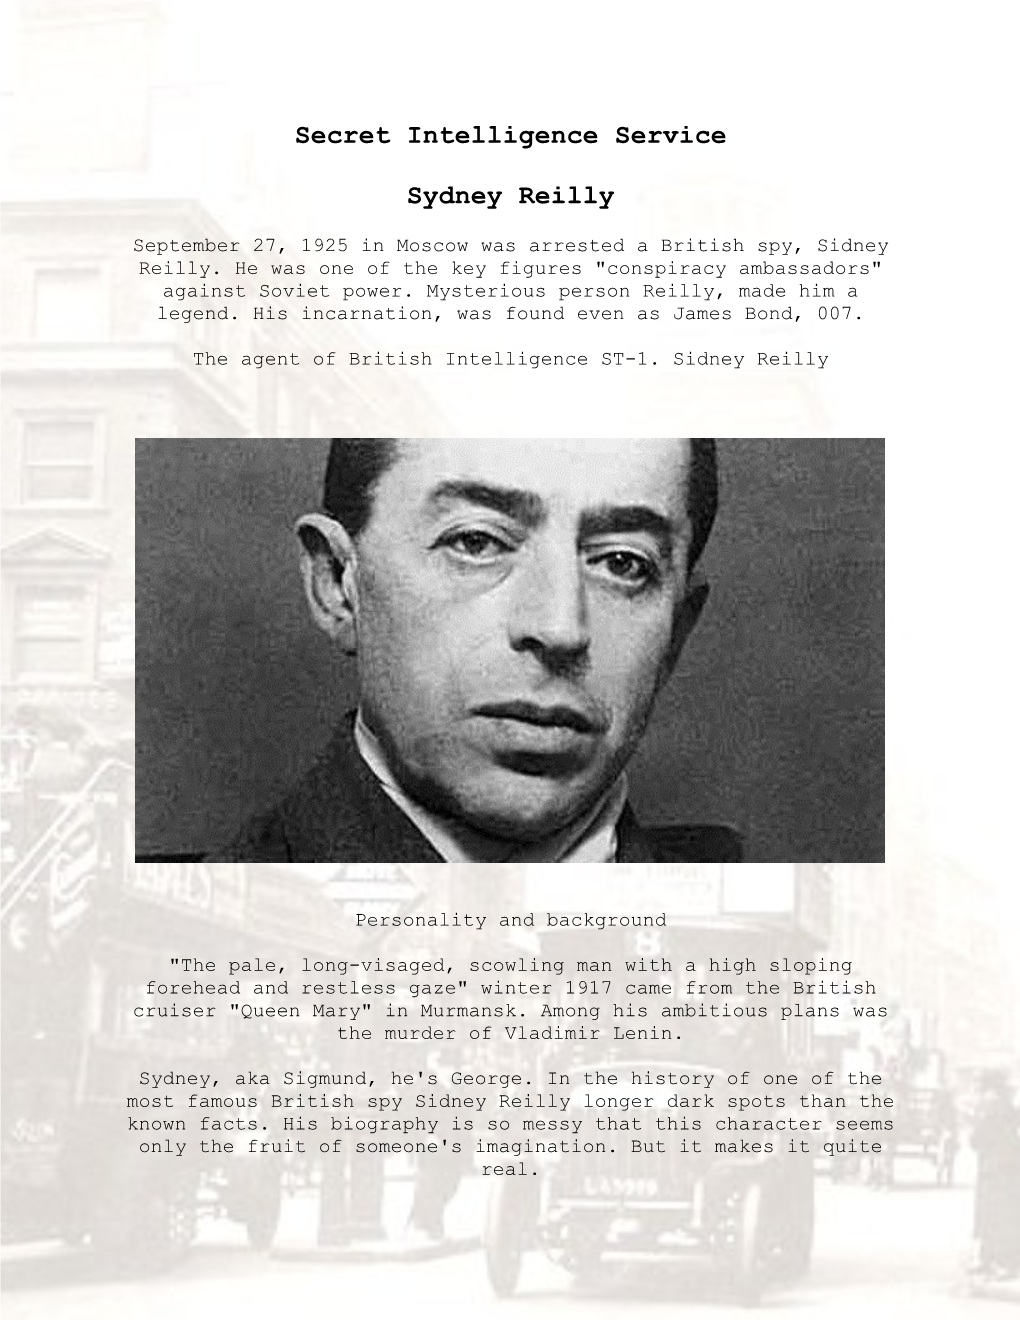 Secret Intelligence Service Sydney Reilly